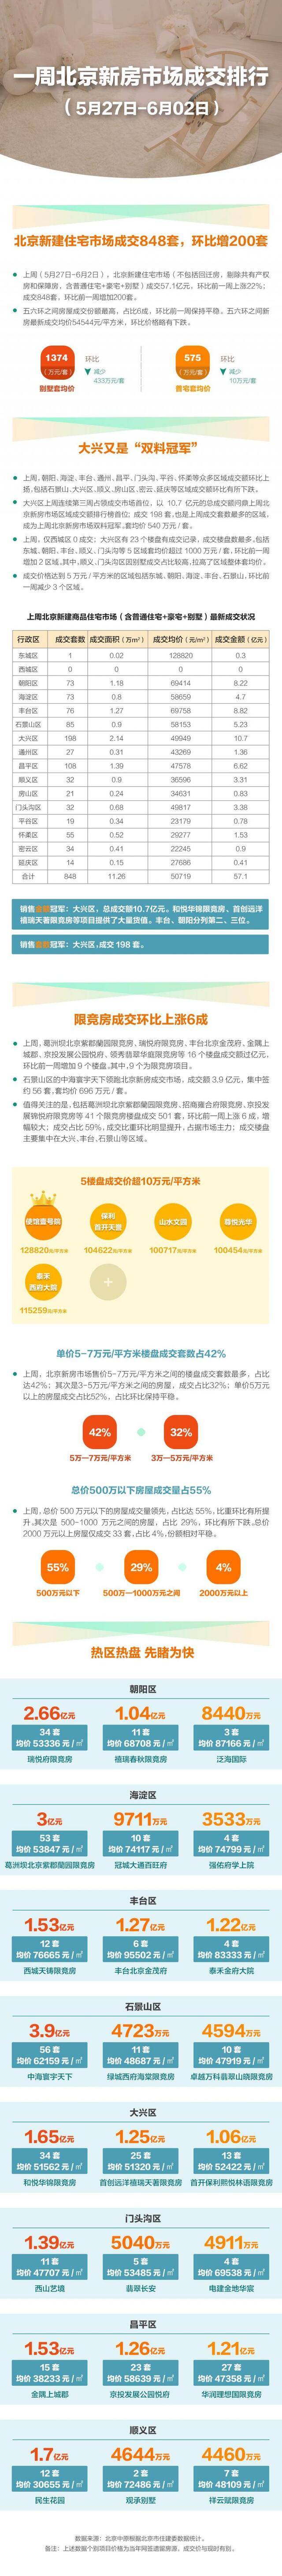 上周北京新建住宅市场成交57.1亿 环比上涨二成